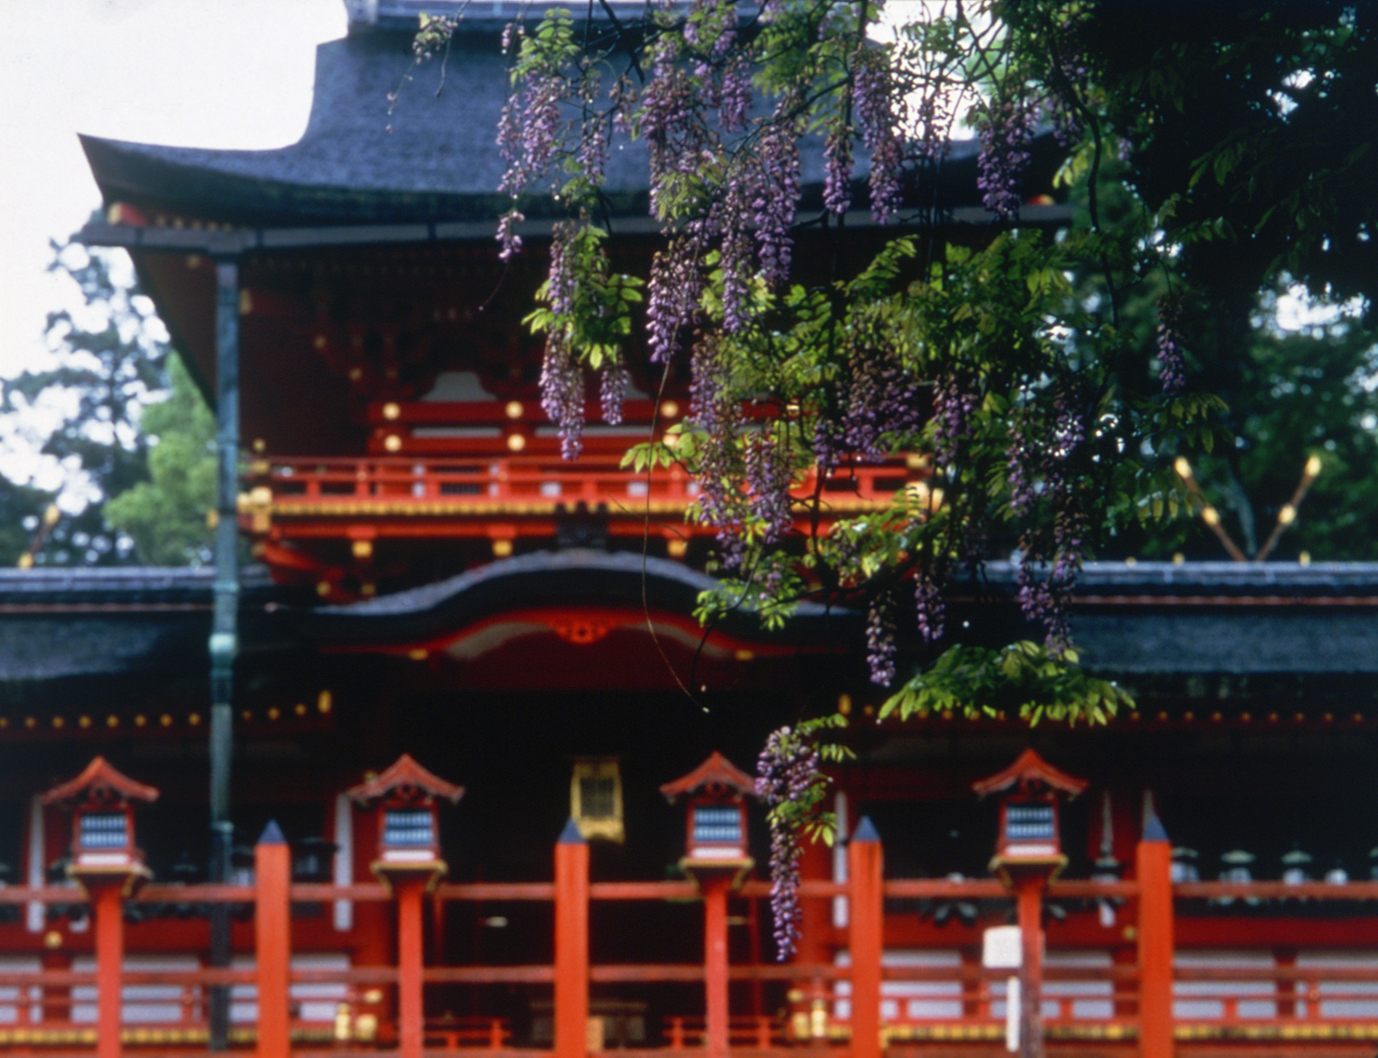 全國約 3,000 家春日神社的總部
照片提供：奈良觀光局